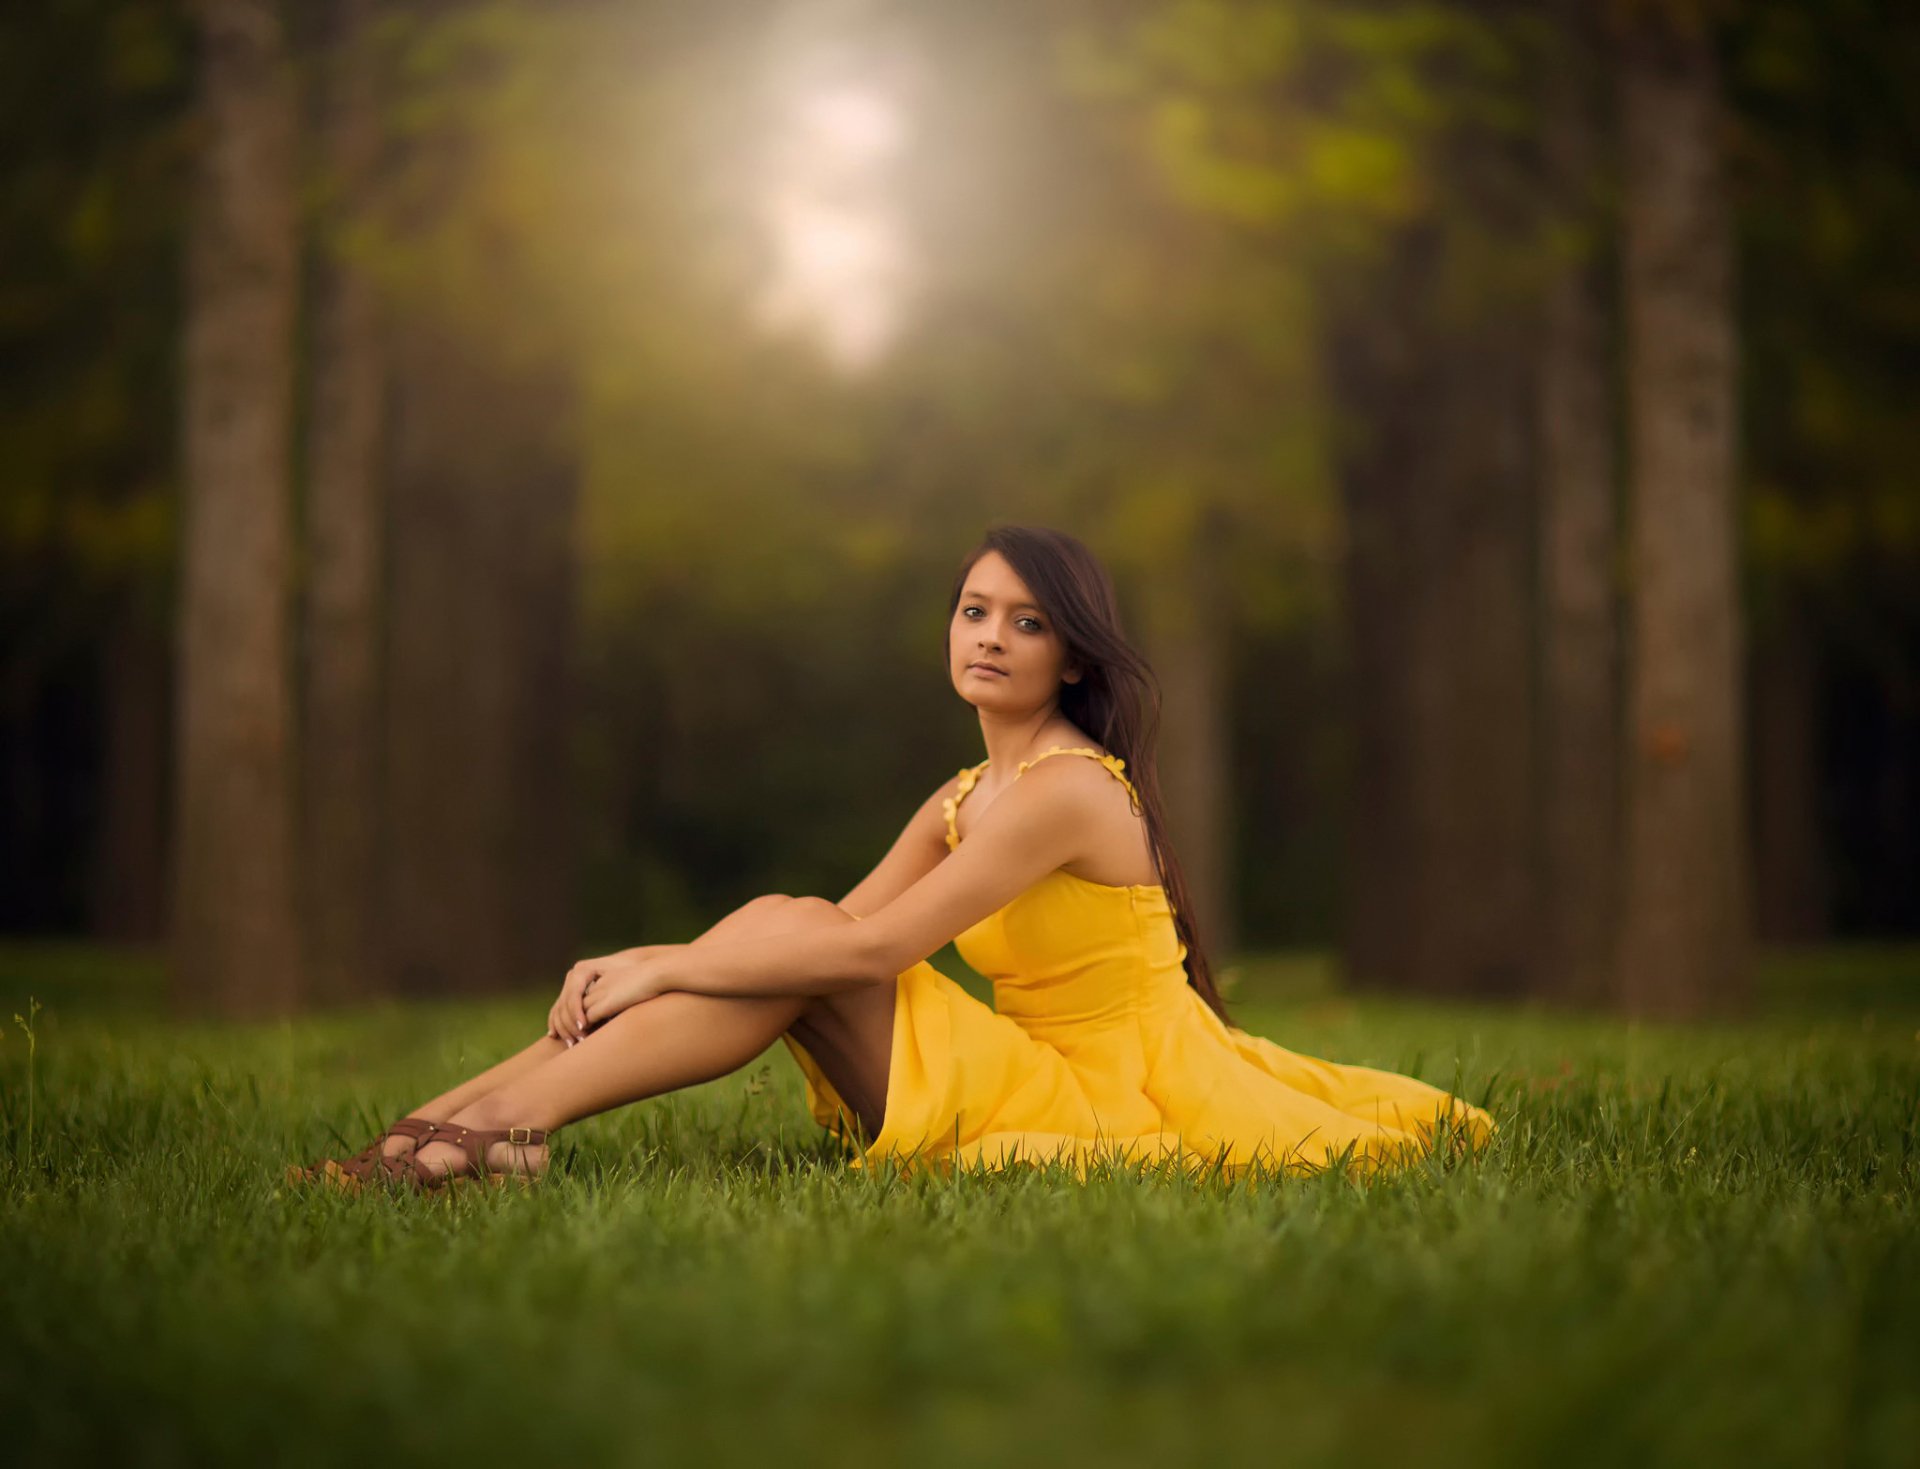 Women search women. Девушка в желтом платье сидит. Фотосессия для полных на природе. Женщина сидит на траве. Девушка сидит на траве.